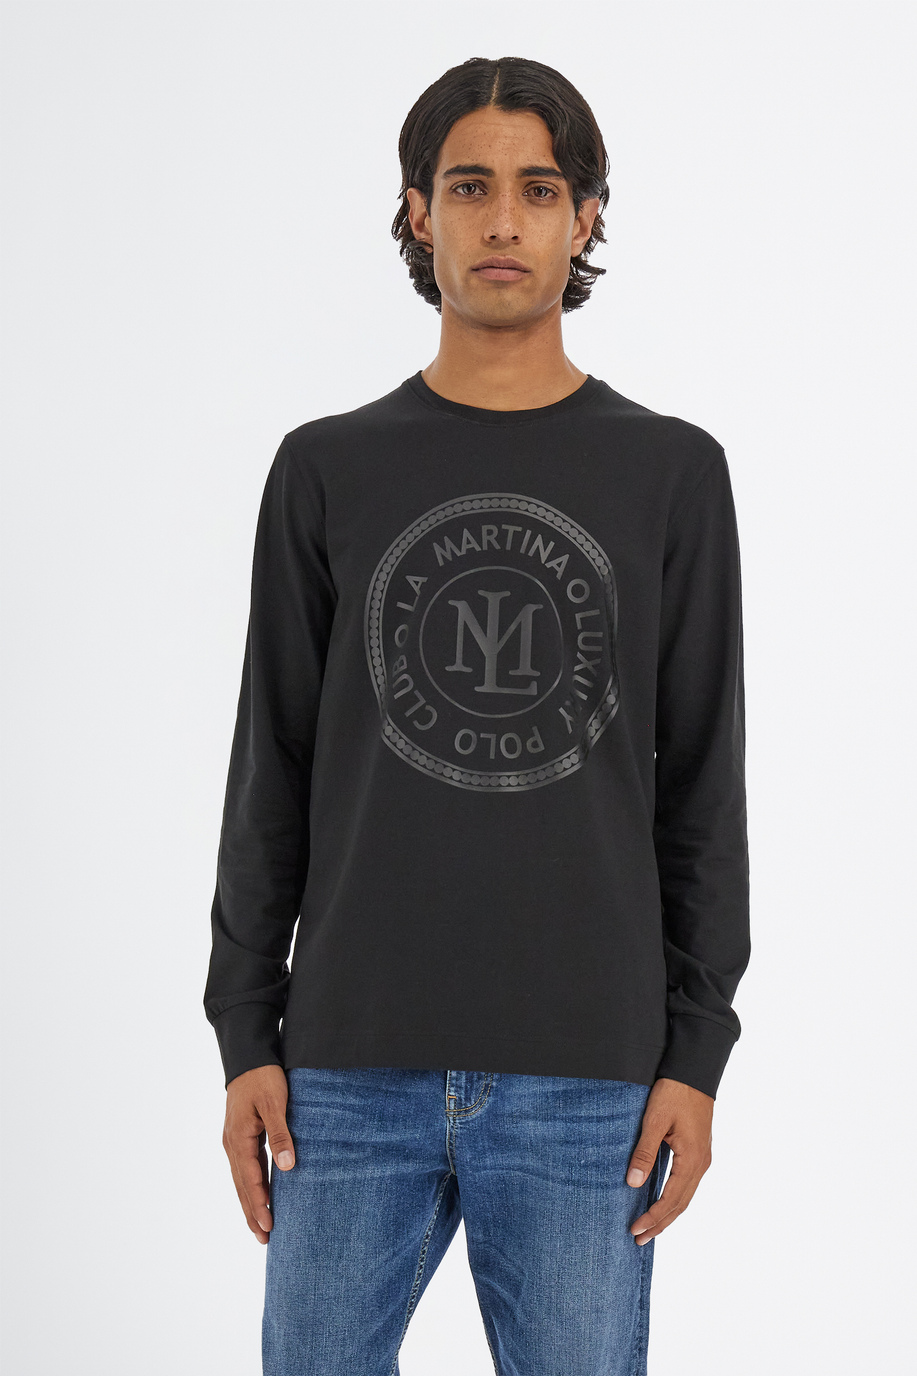 T-shirt da uomo a maniche lunghe modello girocollo regular fit - Special Sale | La Martina - Official Online Shop